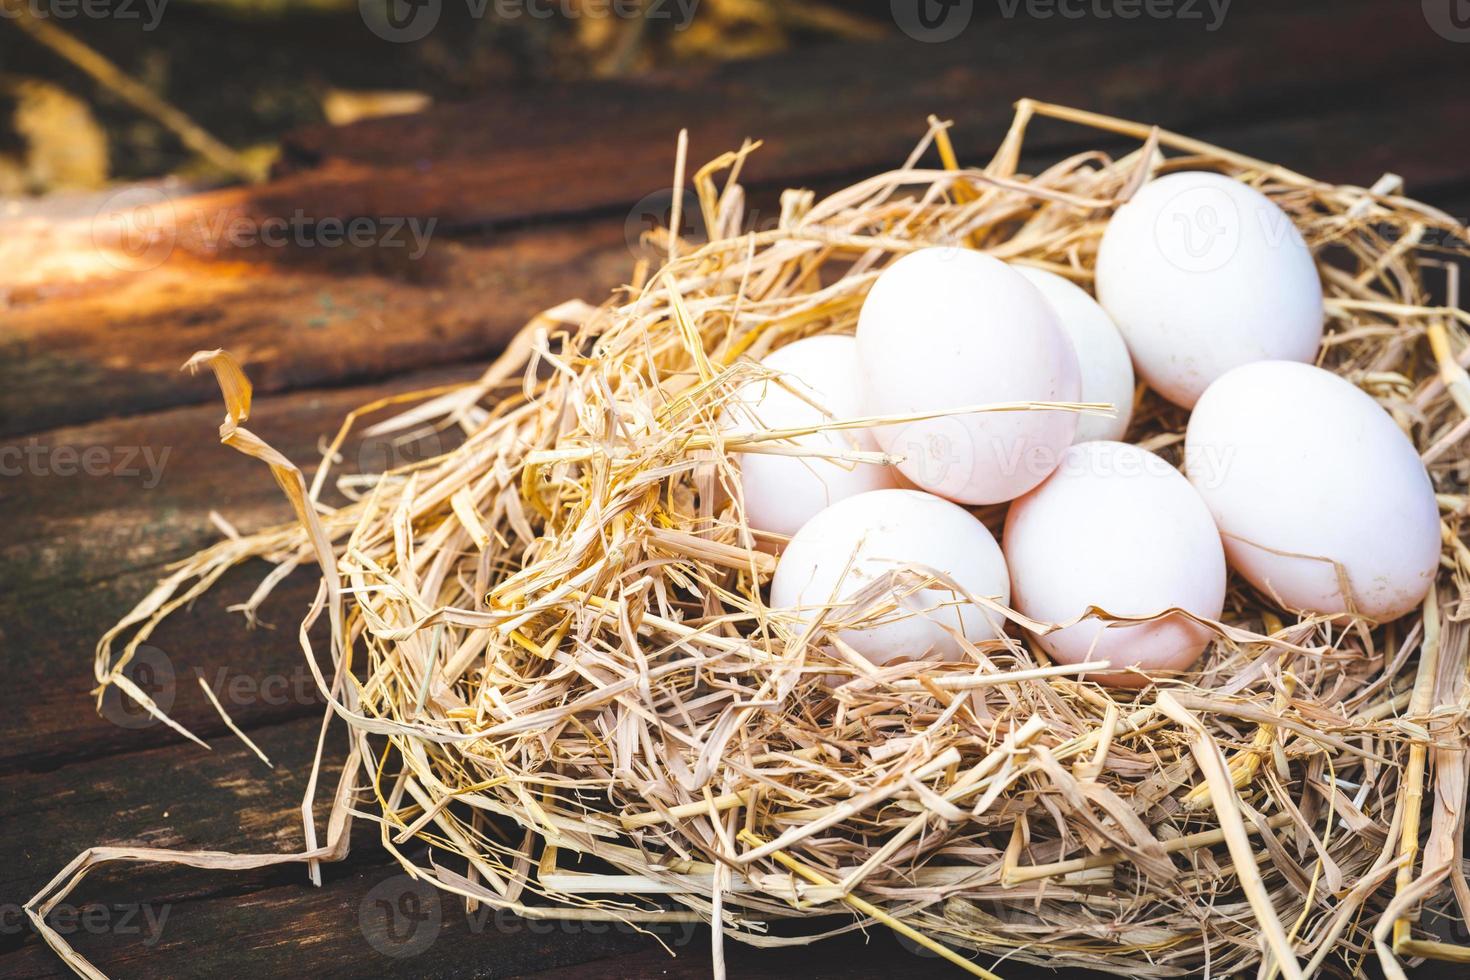 le uova di anatra bianca vengono deposte su un nido fatto di paglia secca giallo-marrone. su pavimento in legno. spazio vuoto per inserire il testo. foto